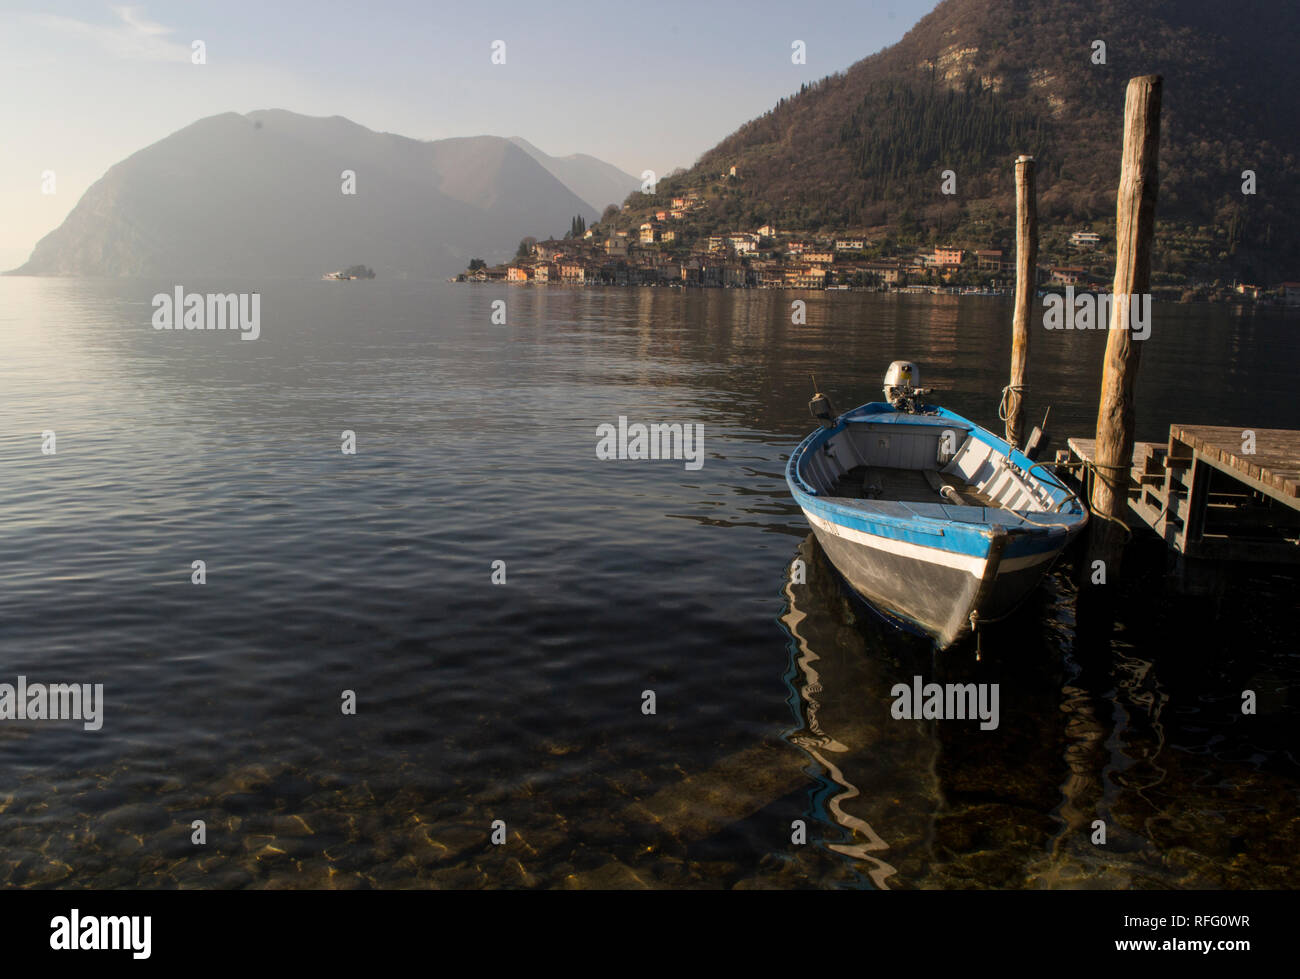 Kleines Boot in der Nähe von einem hölzernen Pier am Iseo See in Norditalien geparkt, mit Blick auf die Insel Monte Isola. Stockfoto